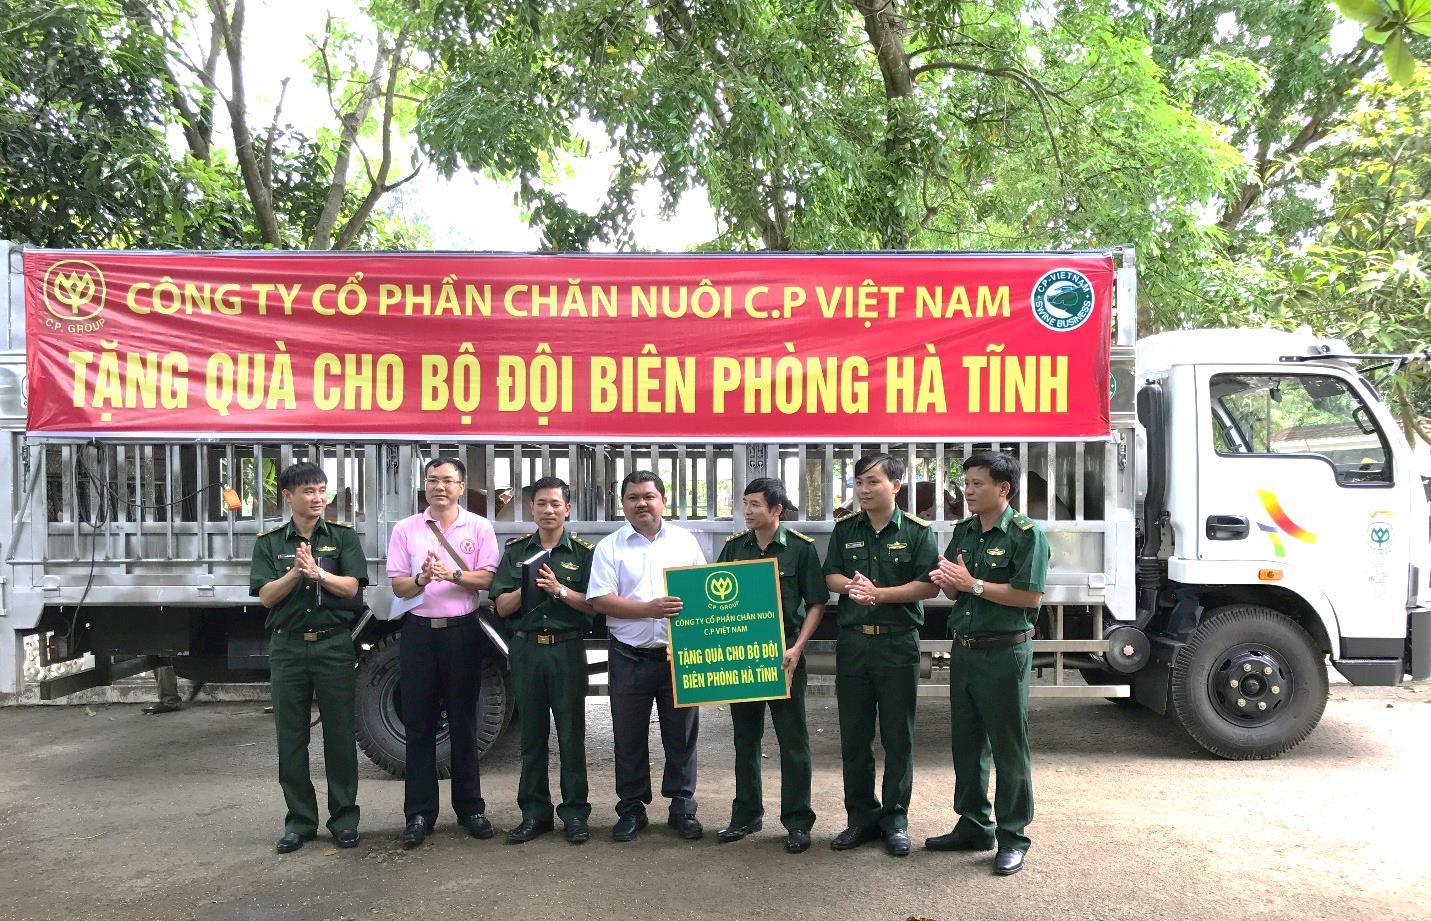 C.P. Việt Nam tặng quà cho bộ đội biên phòng Hà Tĩnh